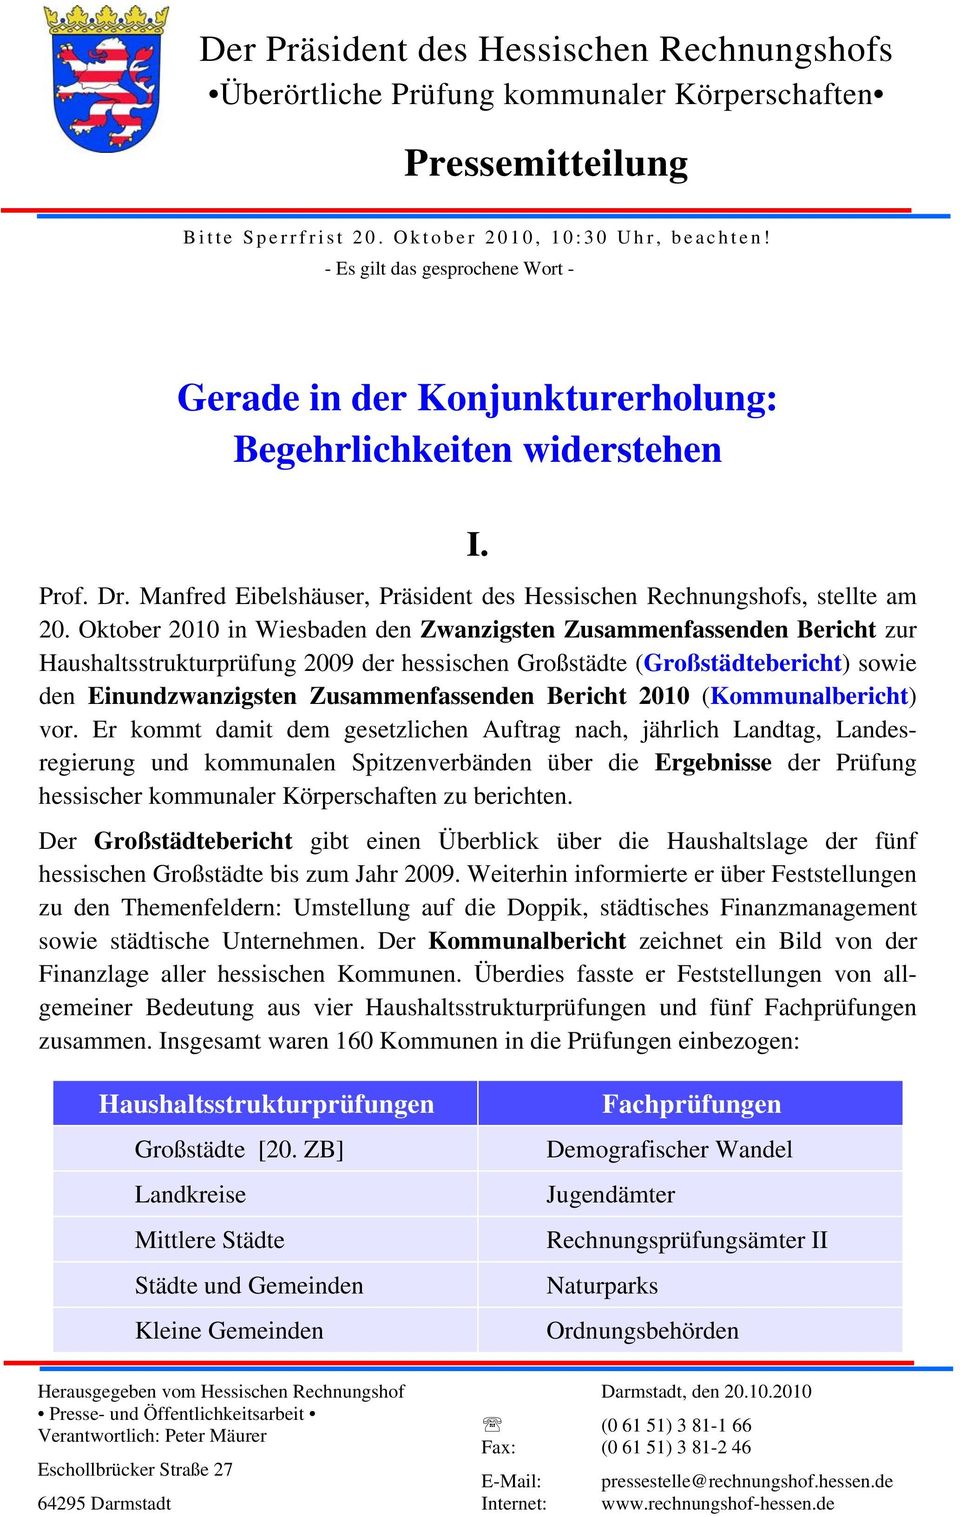 Oktober 2010 in Wiesbaden den Zwanzigsten Zusammenfassenden Bericht zur Haushaltsstrukturprüfung 2009 der hessischen Großstädte (Großstädtebericht) sowie den Einundzwanzigsten Zusammenfassenden